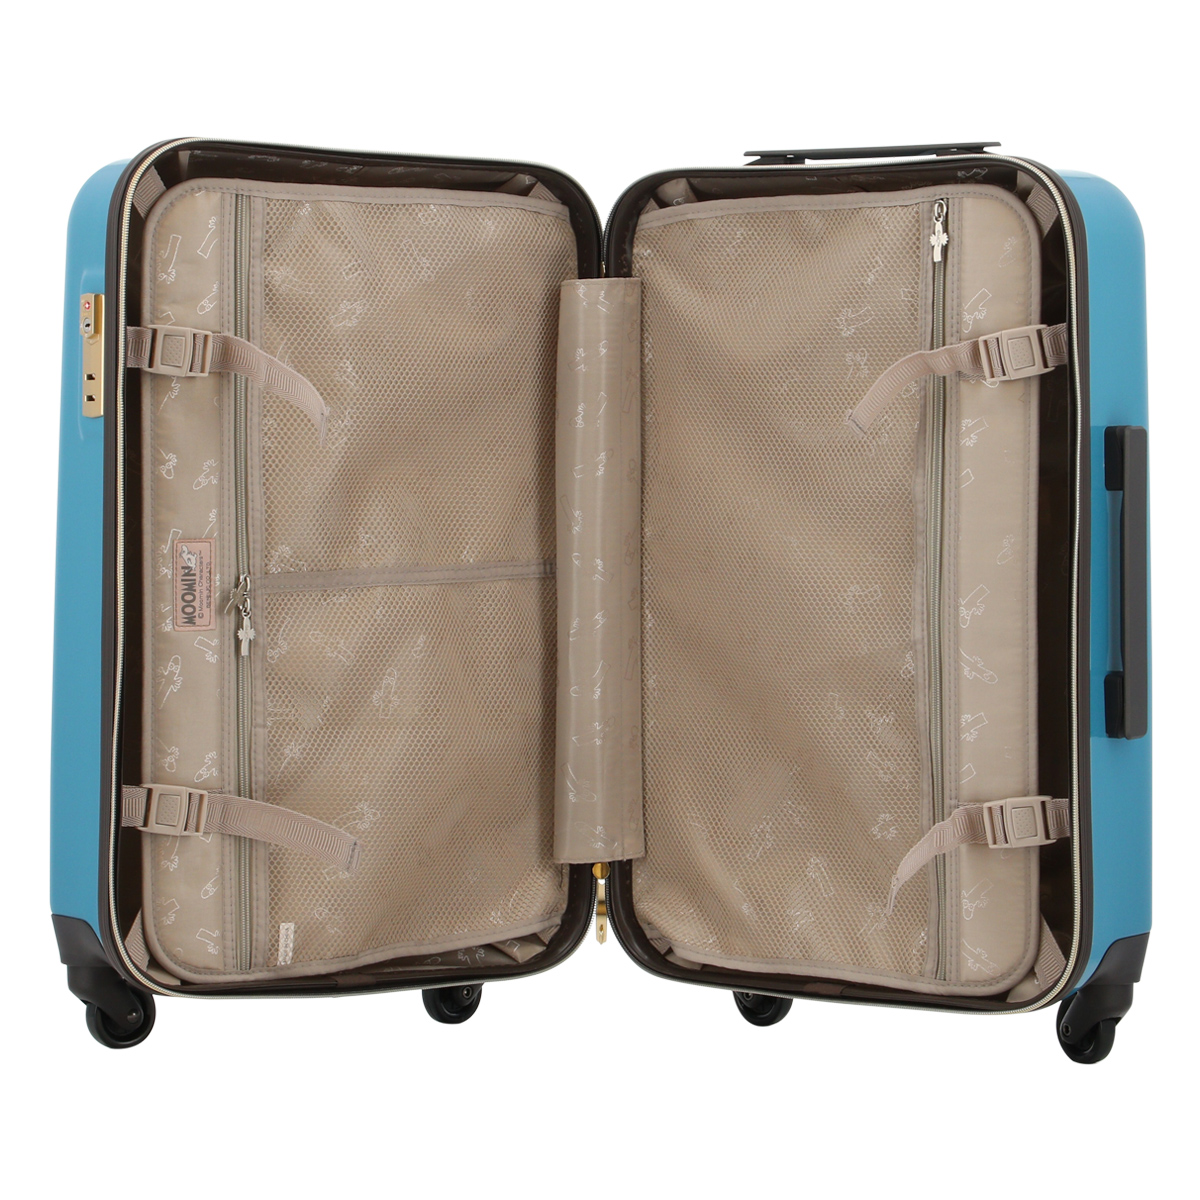 ムーミン スーツケース 44L 55.5cm 3.0kg レディース MM2-026 MOOMIN ハード ファスナー キャリーケース  TSAロック搭載 ぬいぐるみ 1年保証